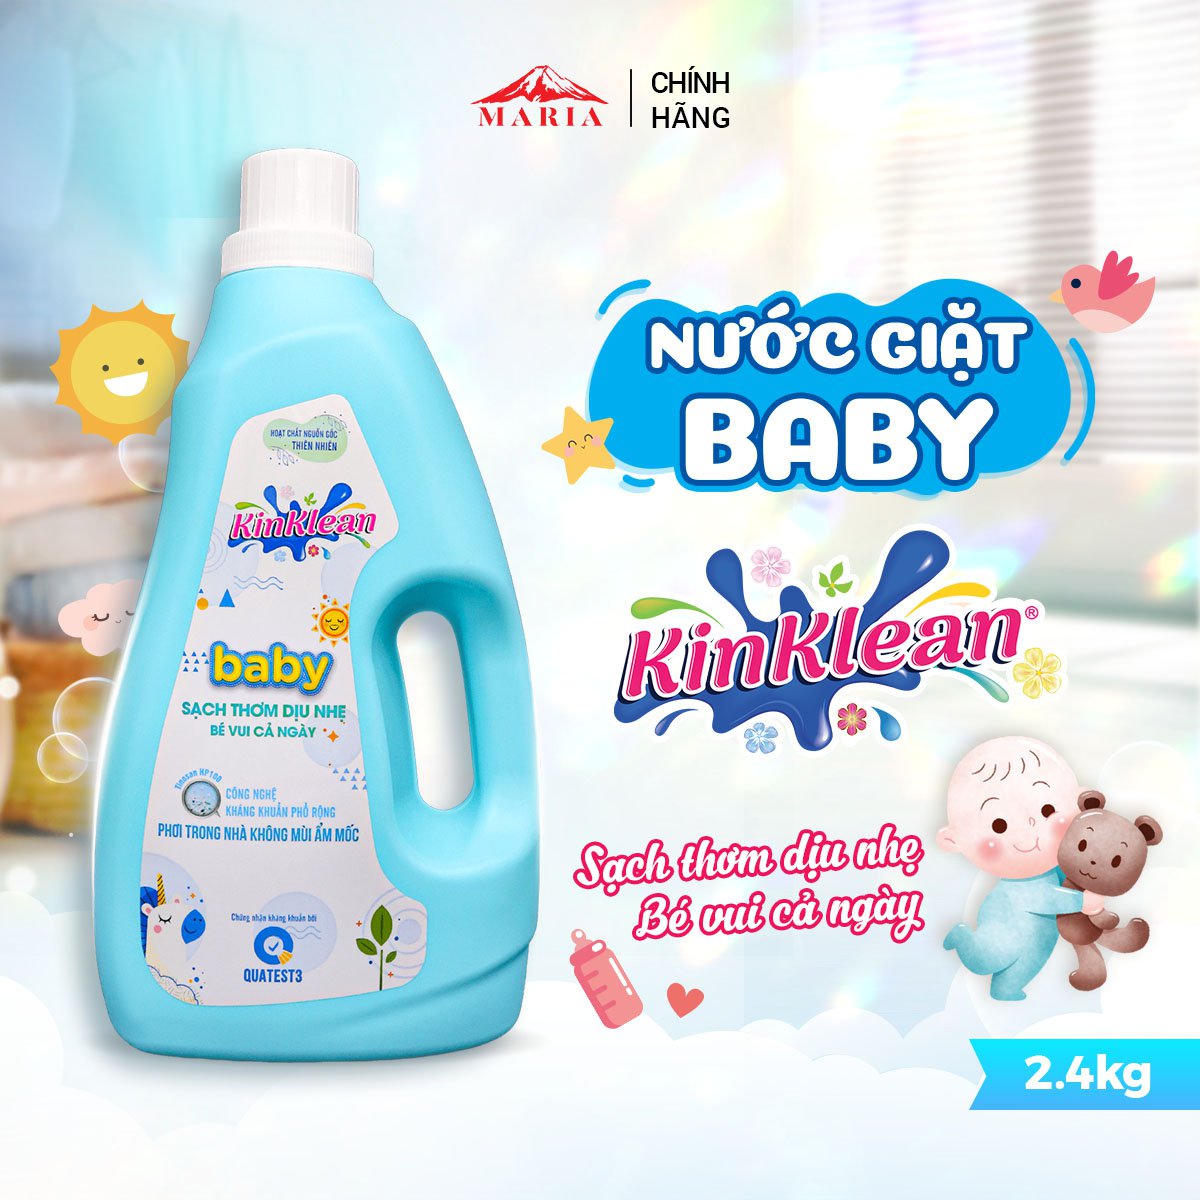 Nước giặt Baby KinKlean kháng khuẩn, sạch thơm dịu nhẹ, an toàn cho da bé 2,4KG